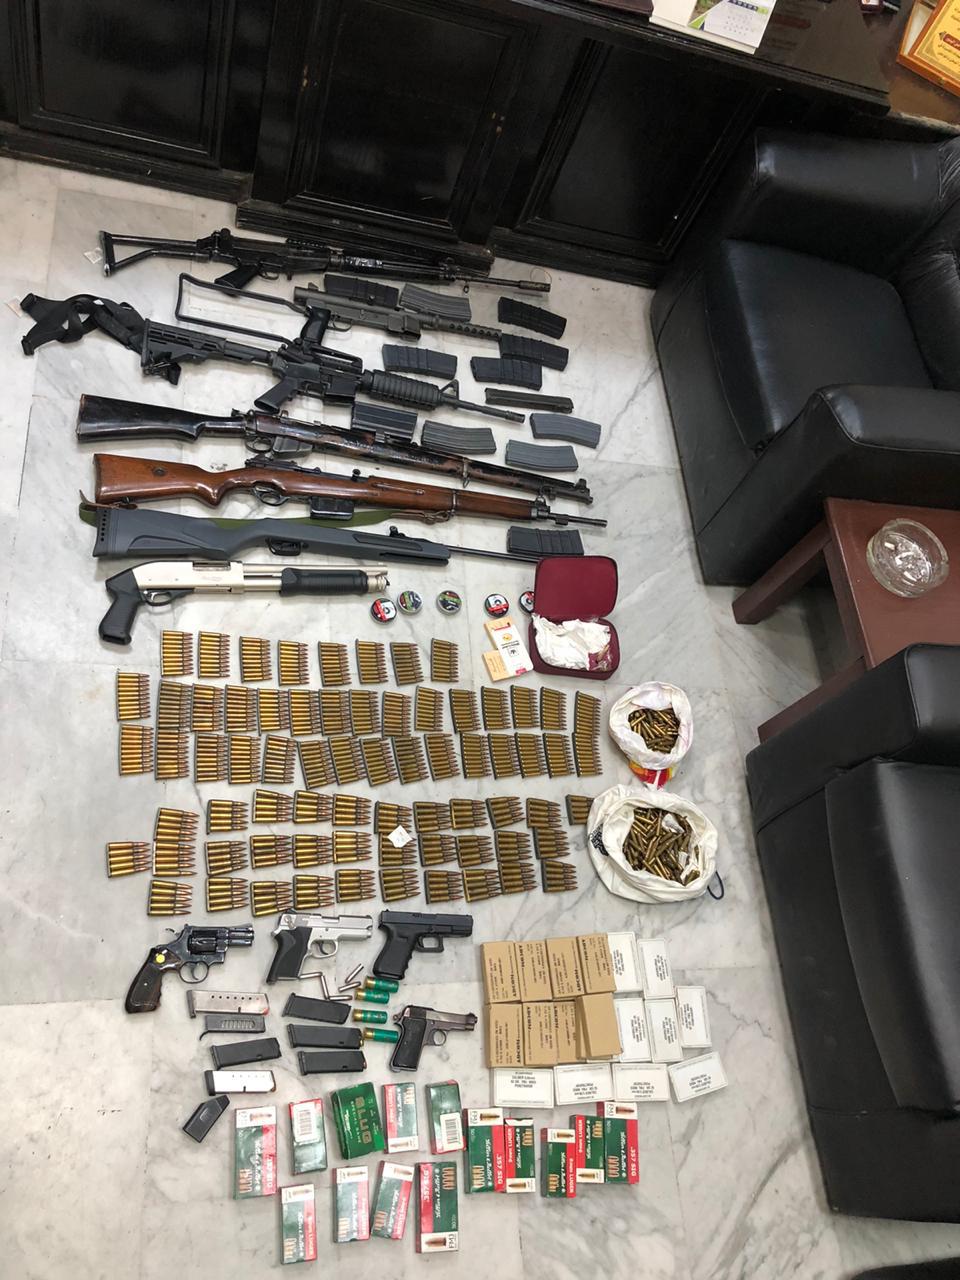 الأمن: القبض على شخص بحوزته كمية من المواد المخدرة وعشرة اسلحة نارية في عمّان